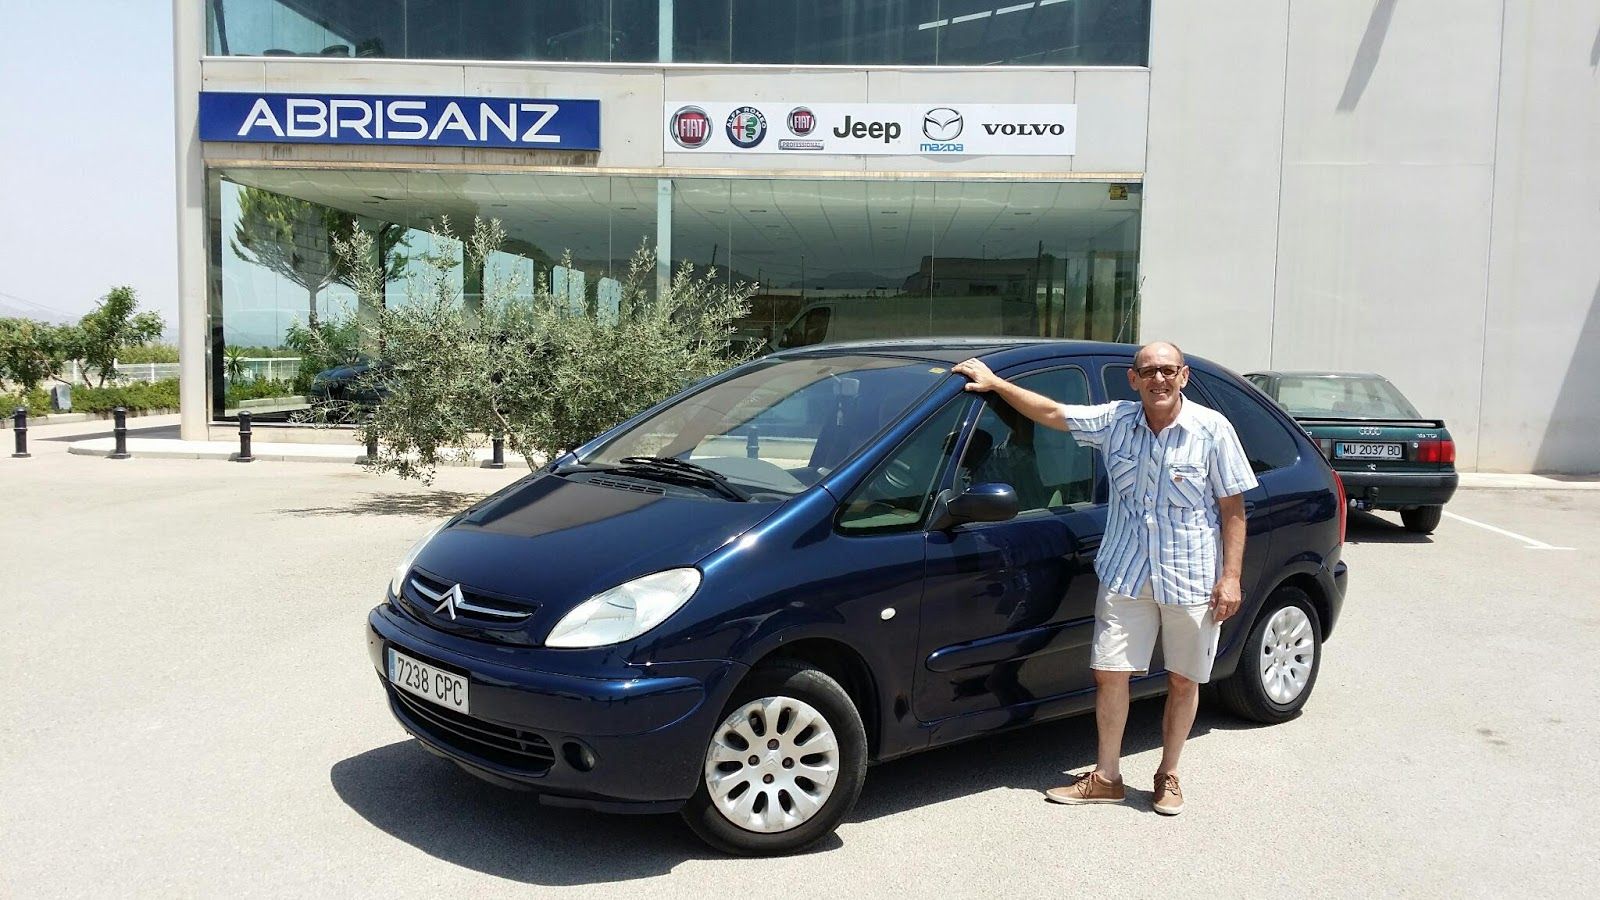 Terminamos la semana con otra venta: un precioso Citroën Picasso para nuestro amigo Leovi